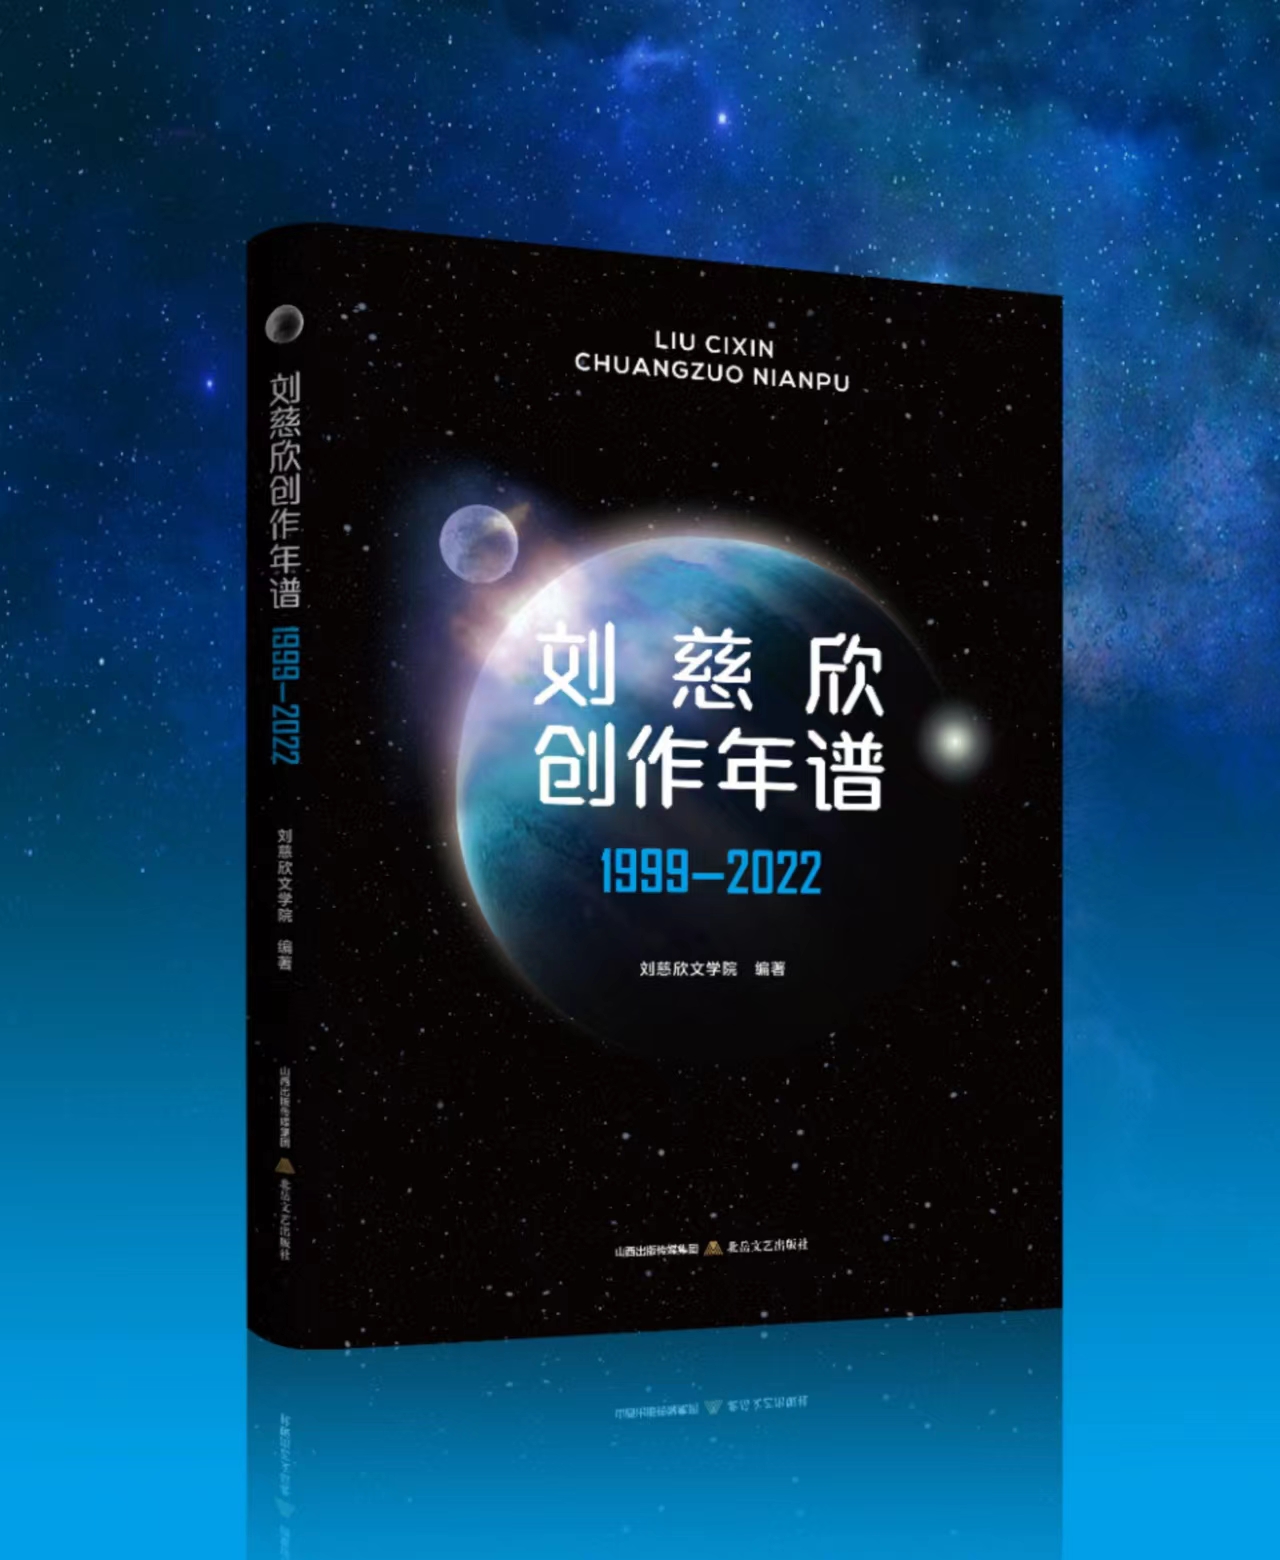 刘慈欣创作年谱1999-2022 全面梳理刘慈欣创作历程和文学作品的图书。